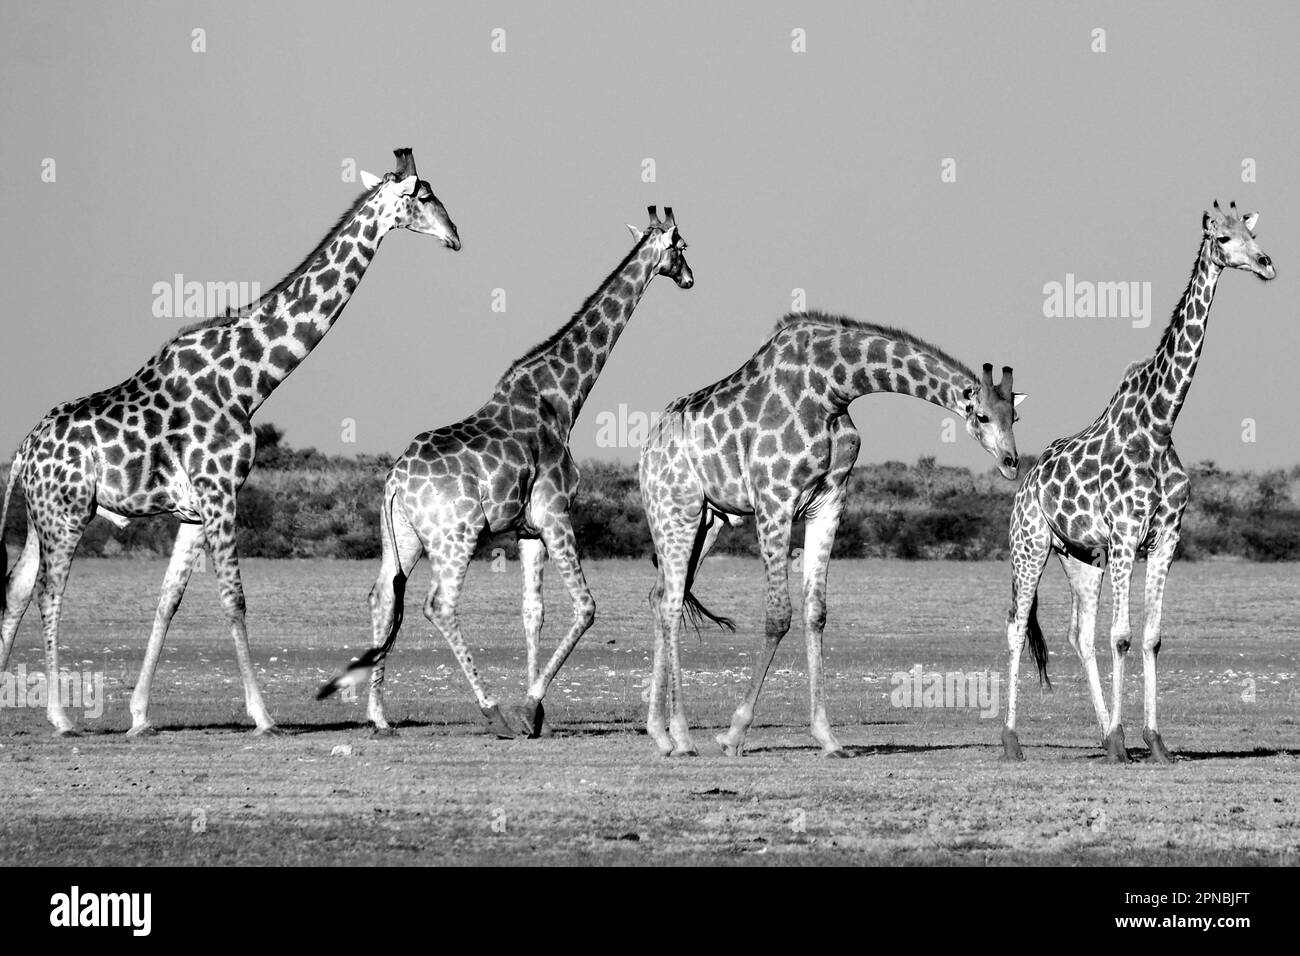 Giraffes in Central Kalahari, Botswana Stock Photo